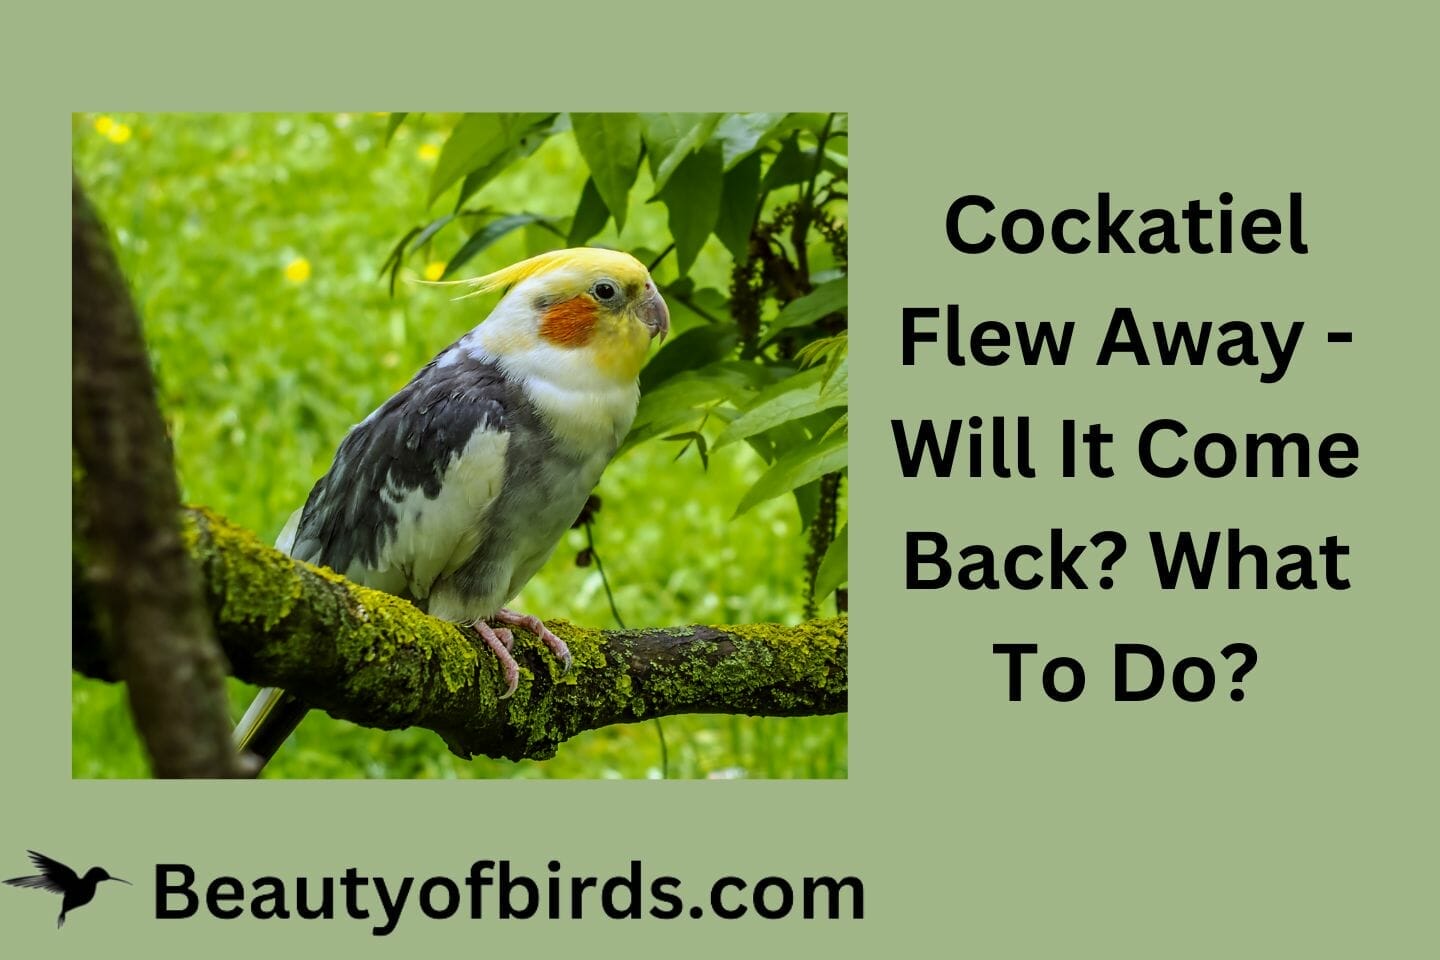 Cockatiel Flew Away